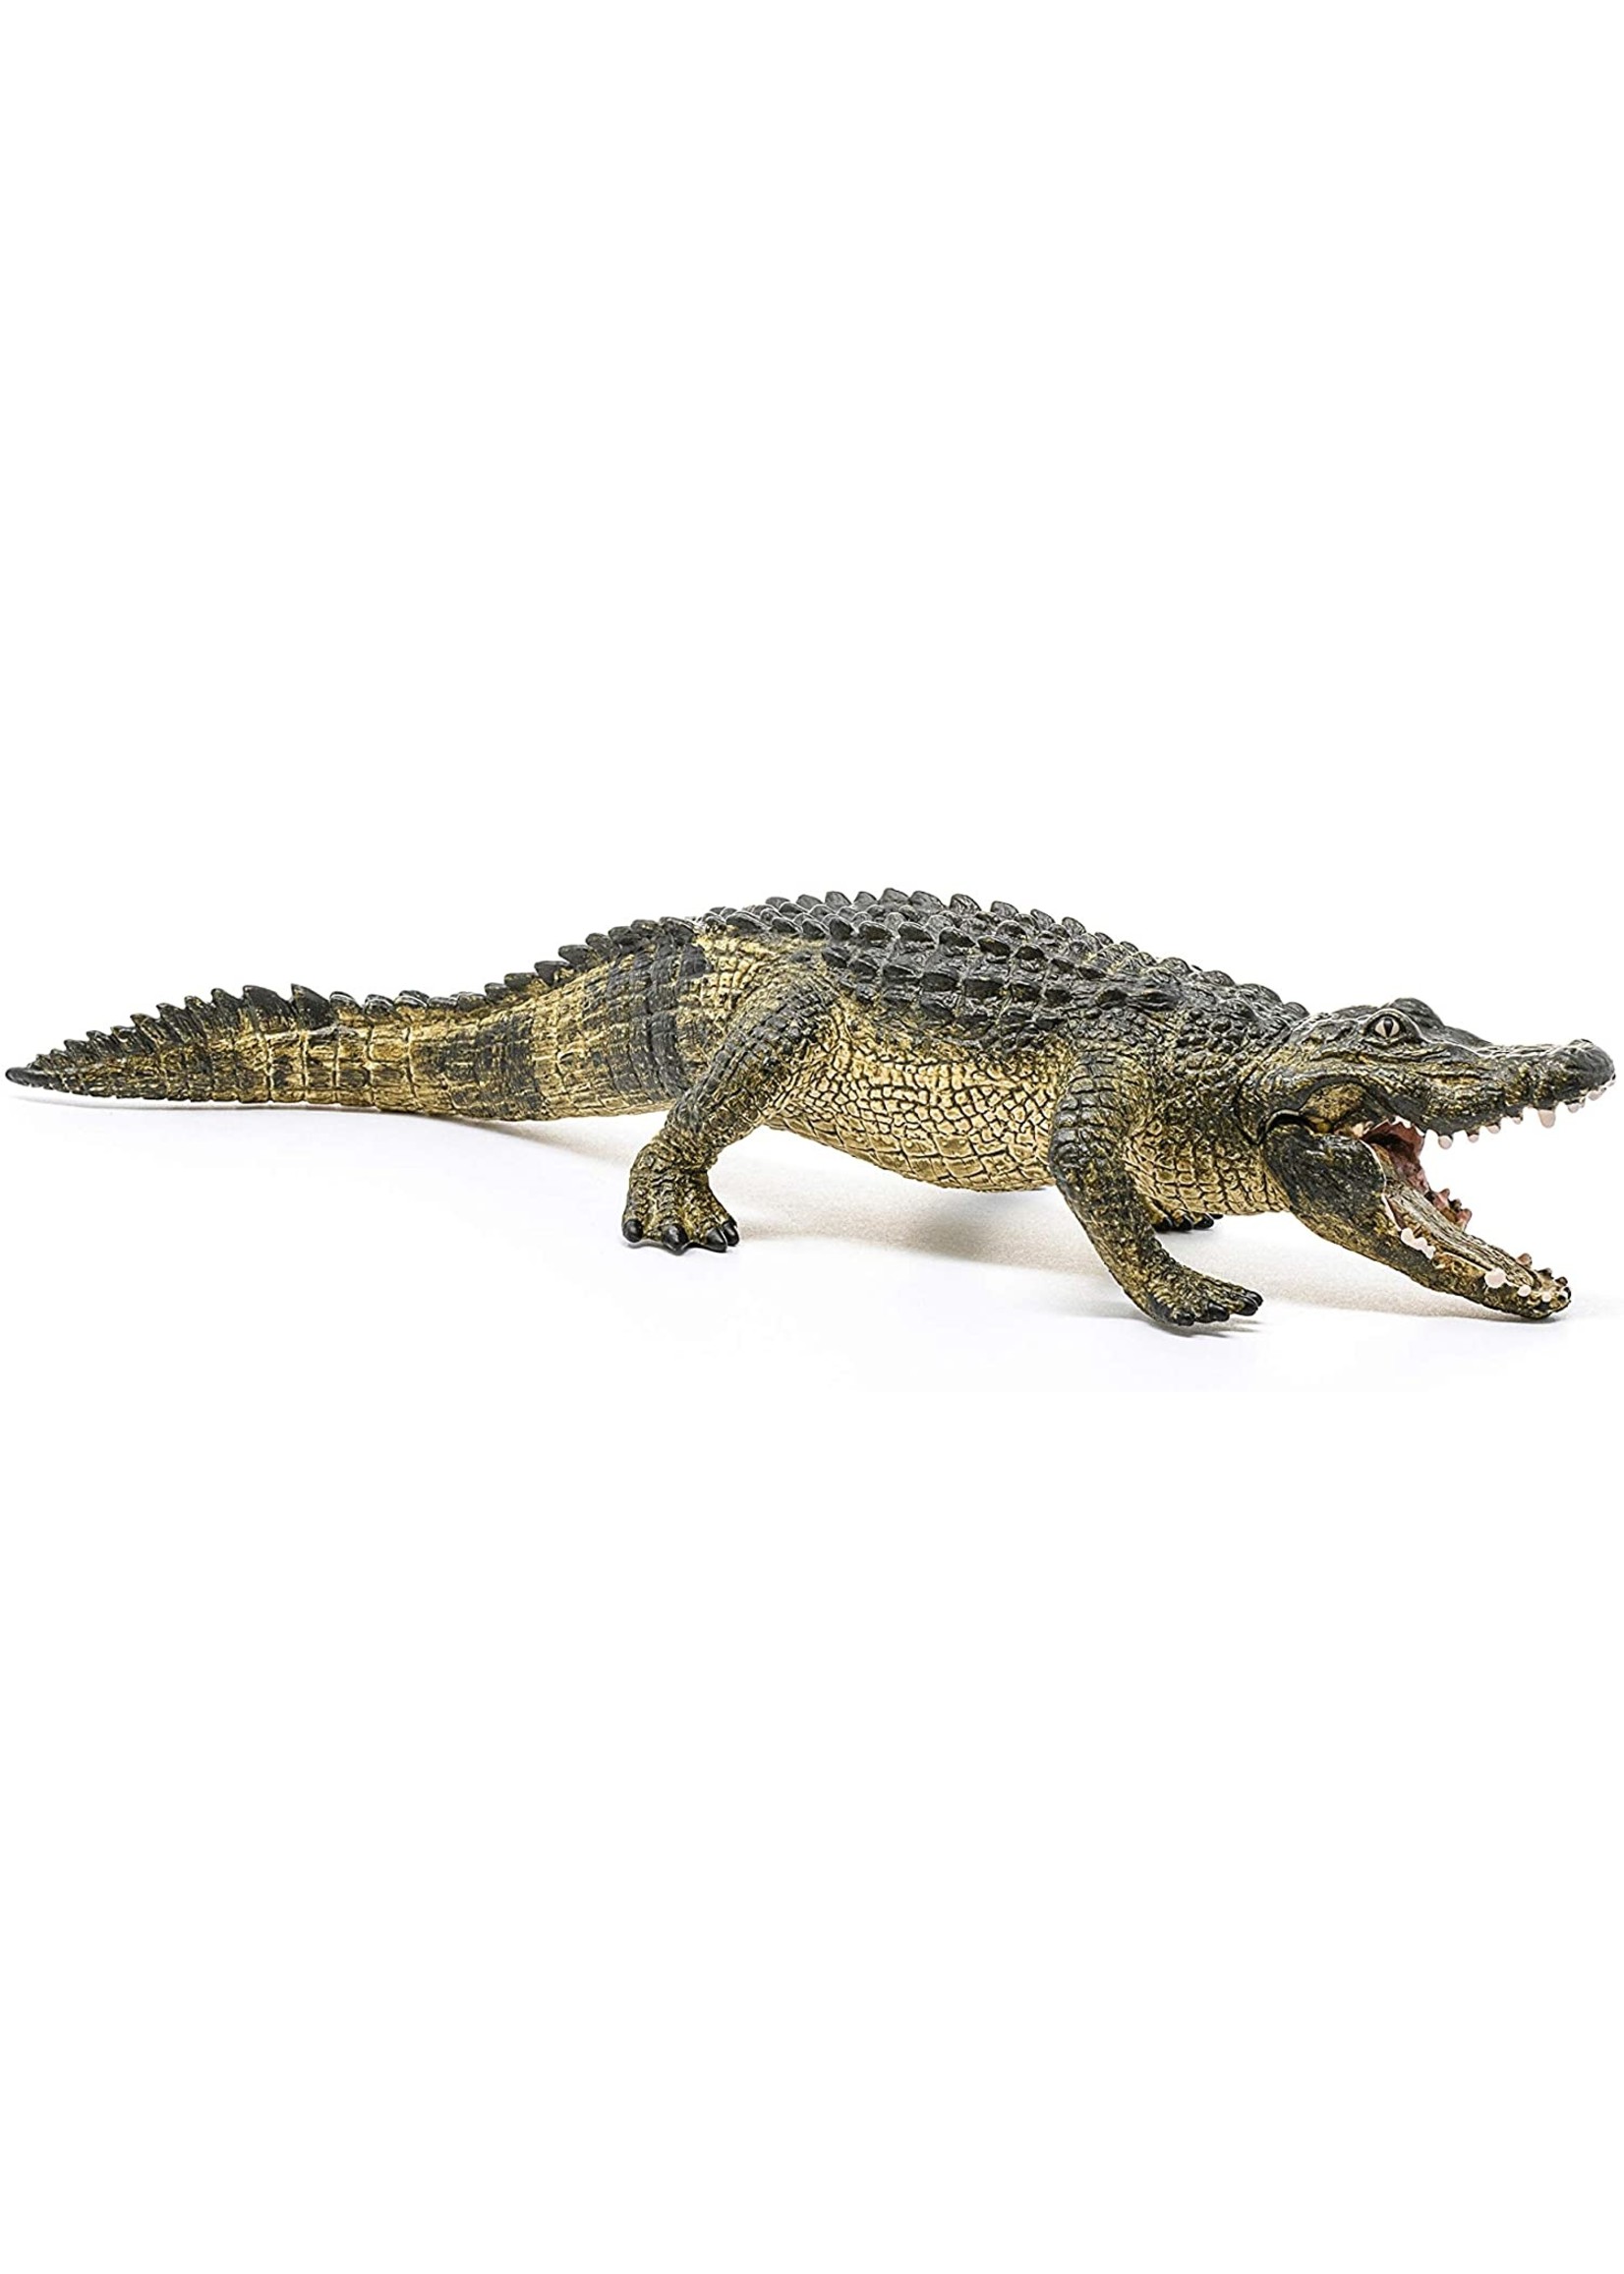 Schleich 14727 - Alligator